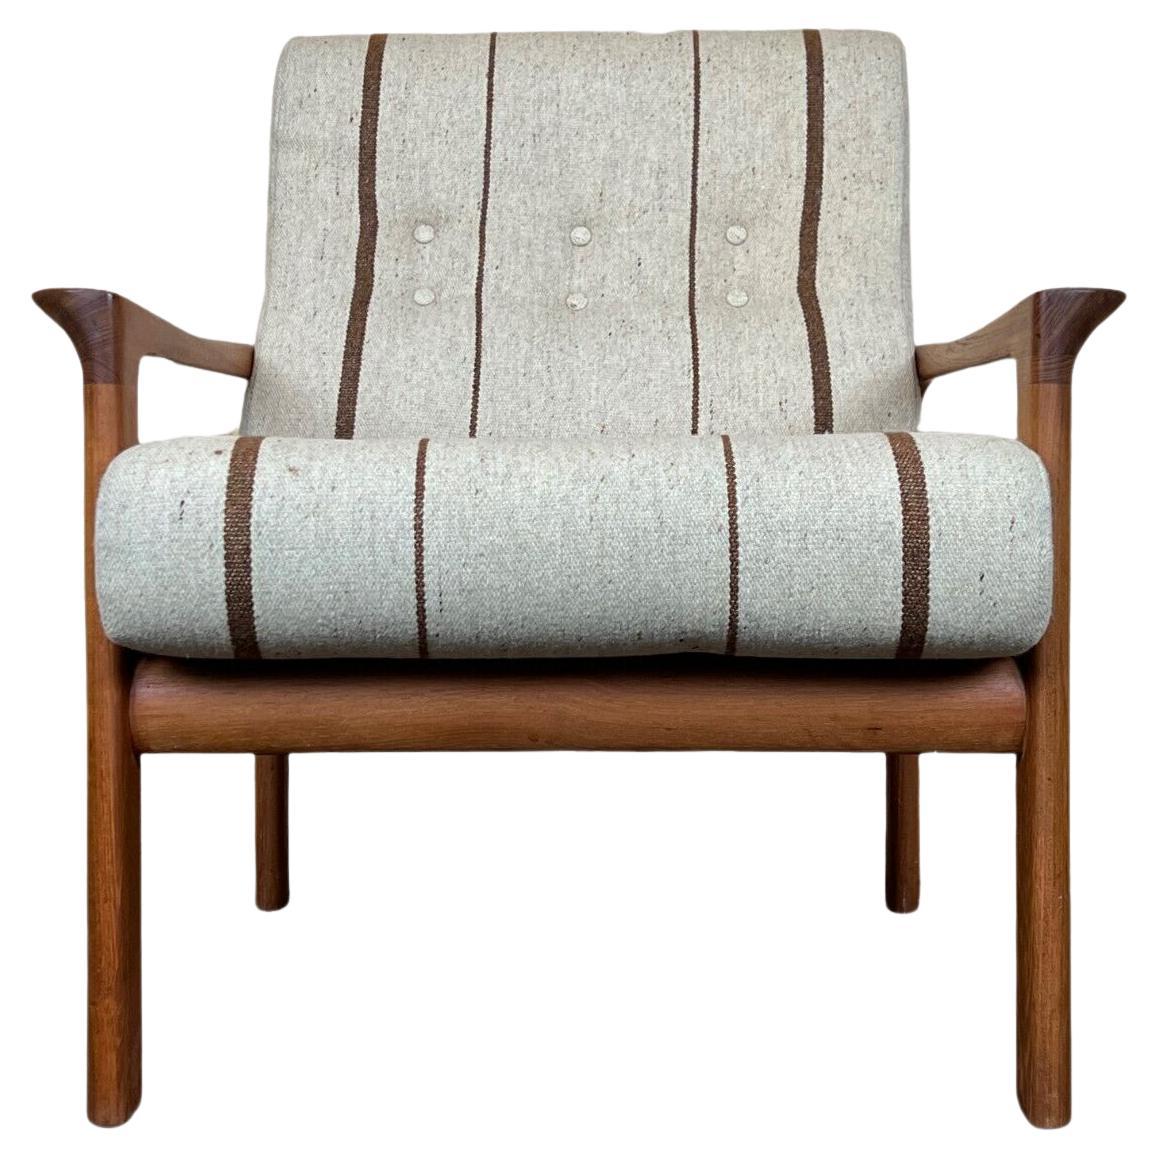 60s 70s Teak Easy Chair Sven Ellekaer for Komfort Design Denmark For Sale